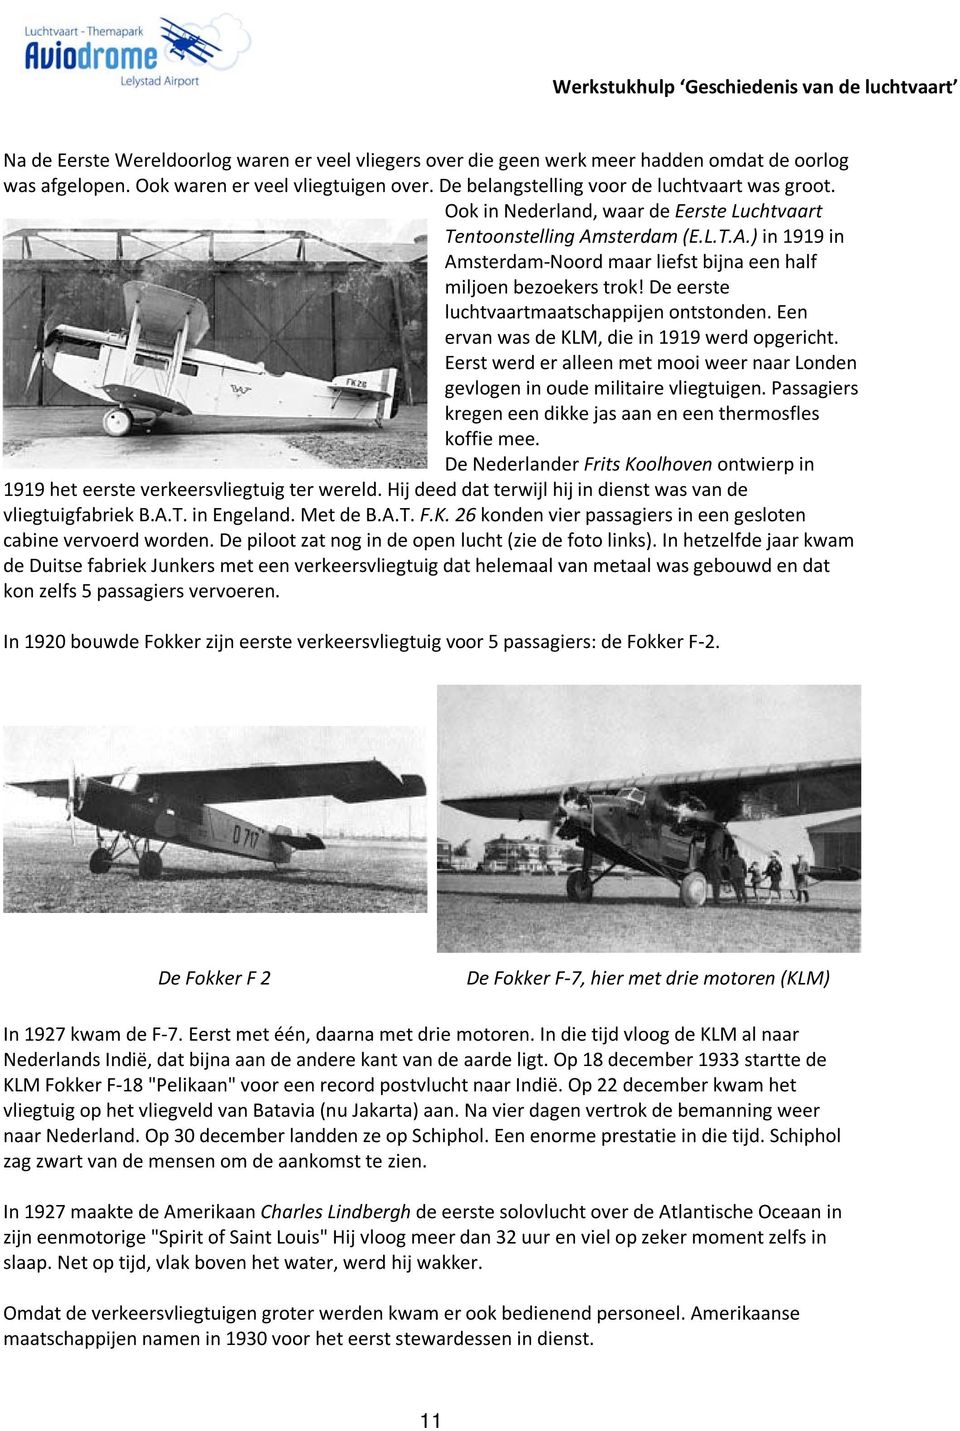 De eerste luchtvaartmaatschappijen ontstonden. Een ervan was de KLM, die in 1919 werd opgericht. Eerst werd er alleen met mooi weer naar Londen gevlogen in oude militaire vliegtuigen.